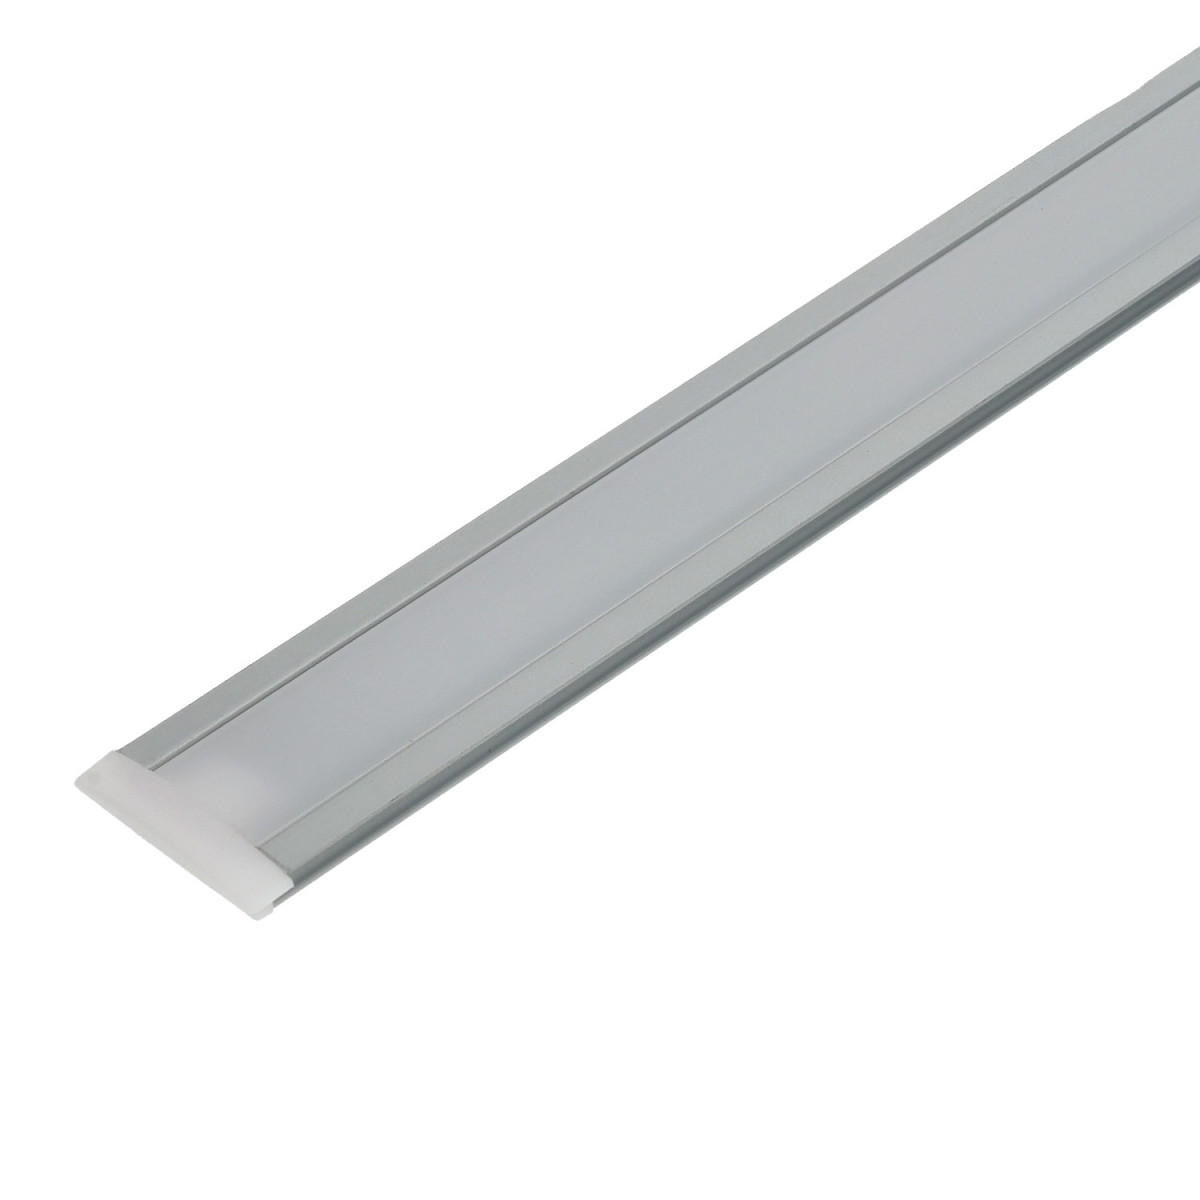 Profil rectangulaire en aluminium pour bande led de 2 m avec languettes